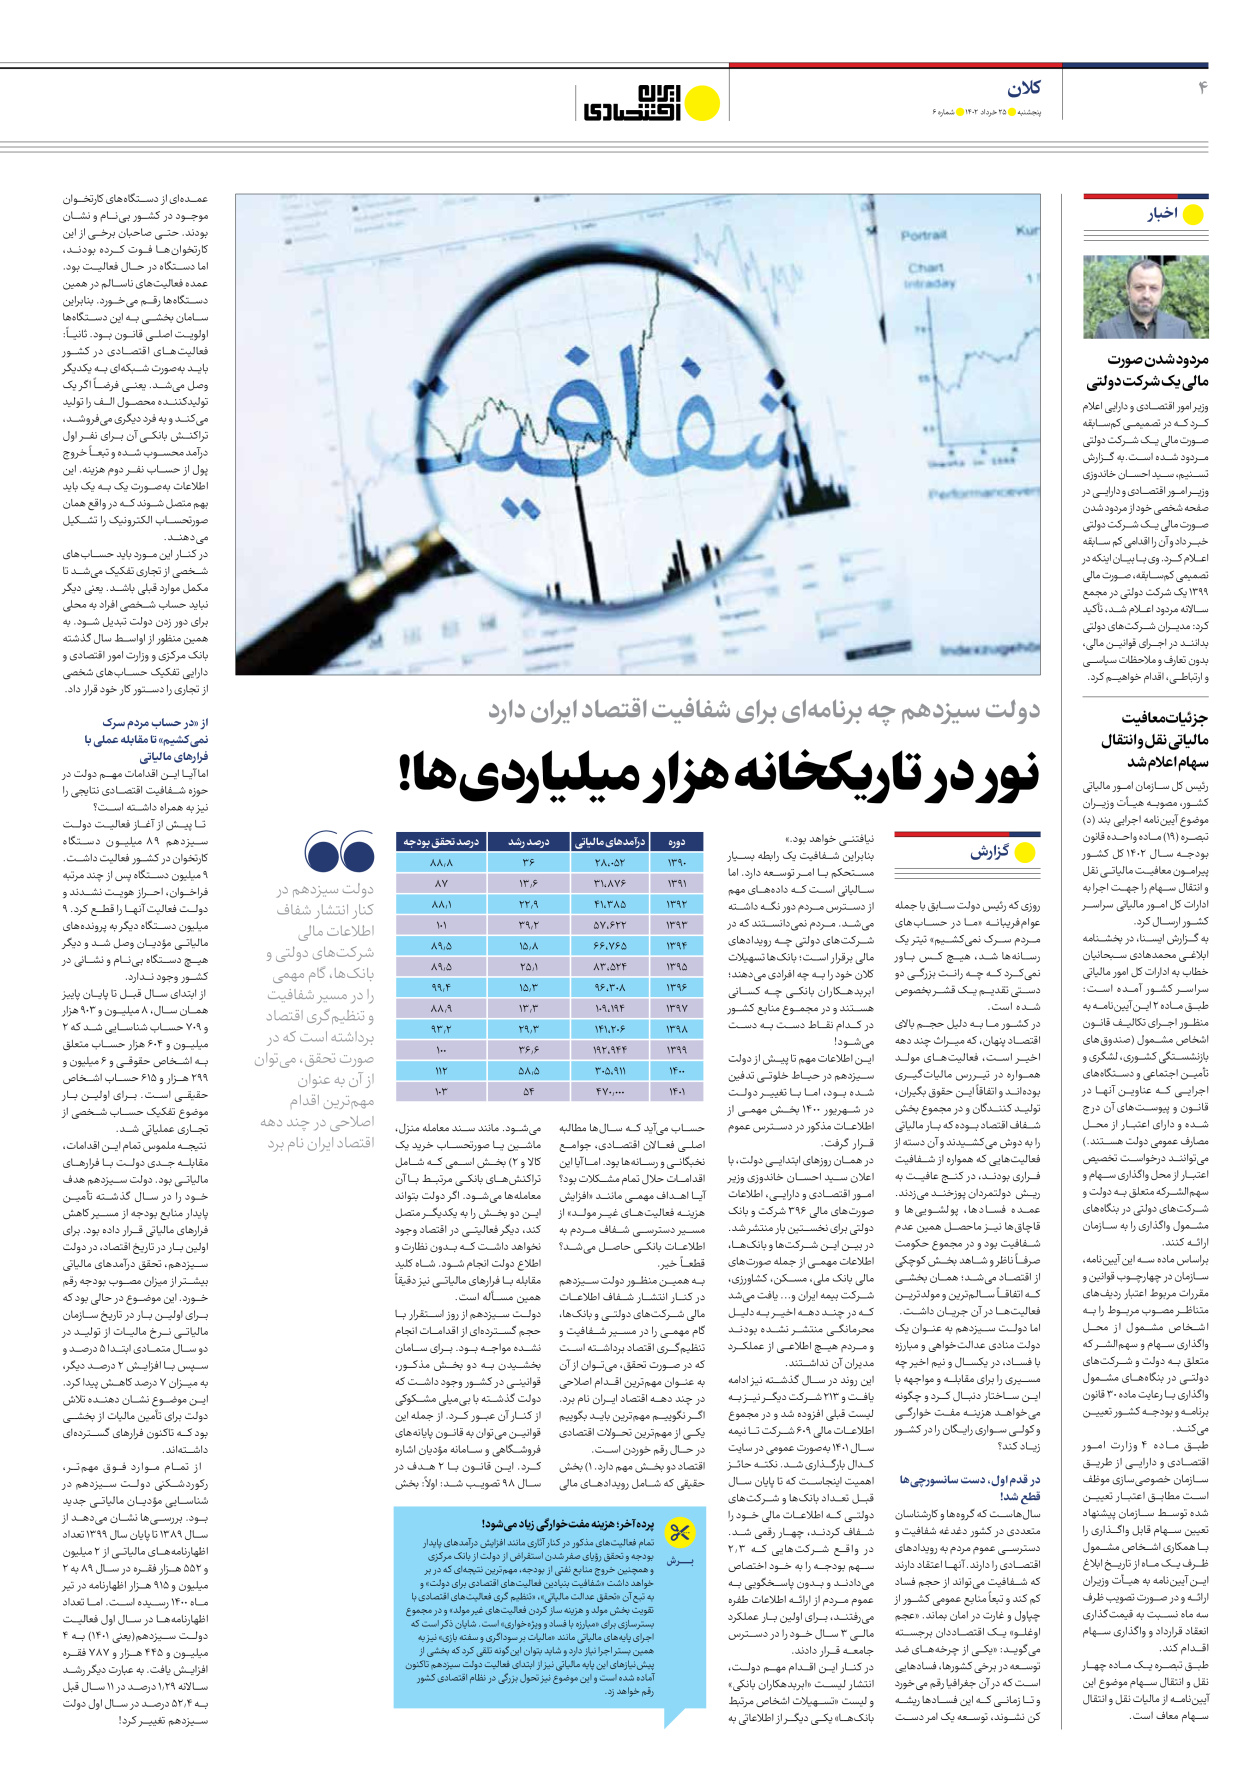 روزنامه ایران اقتصادی - شماره شش - ۲۵ خرداد ۱۴۰۲ - صفحه ۴